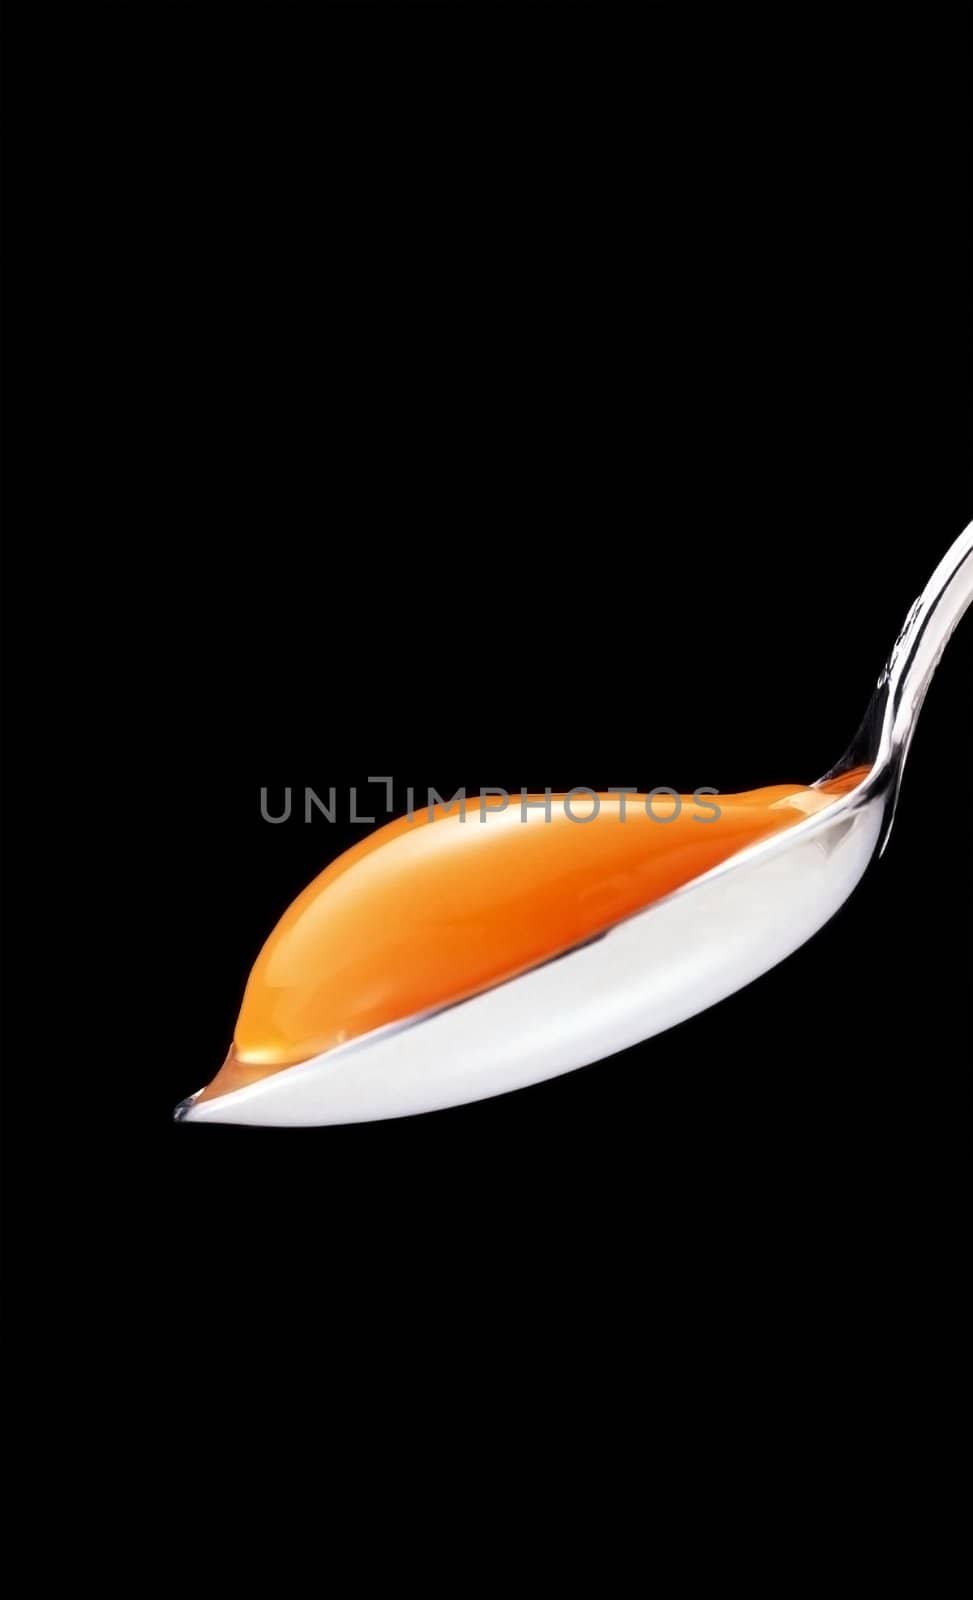 yolk in the spoon by ozaiachin